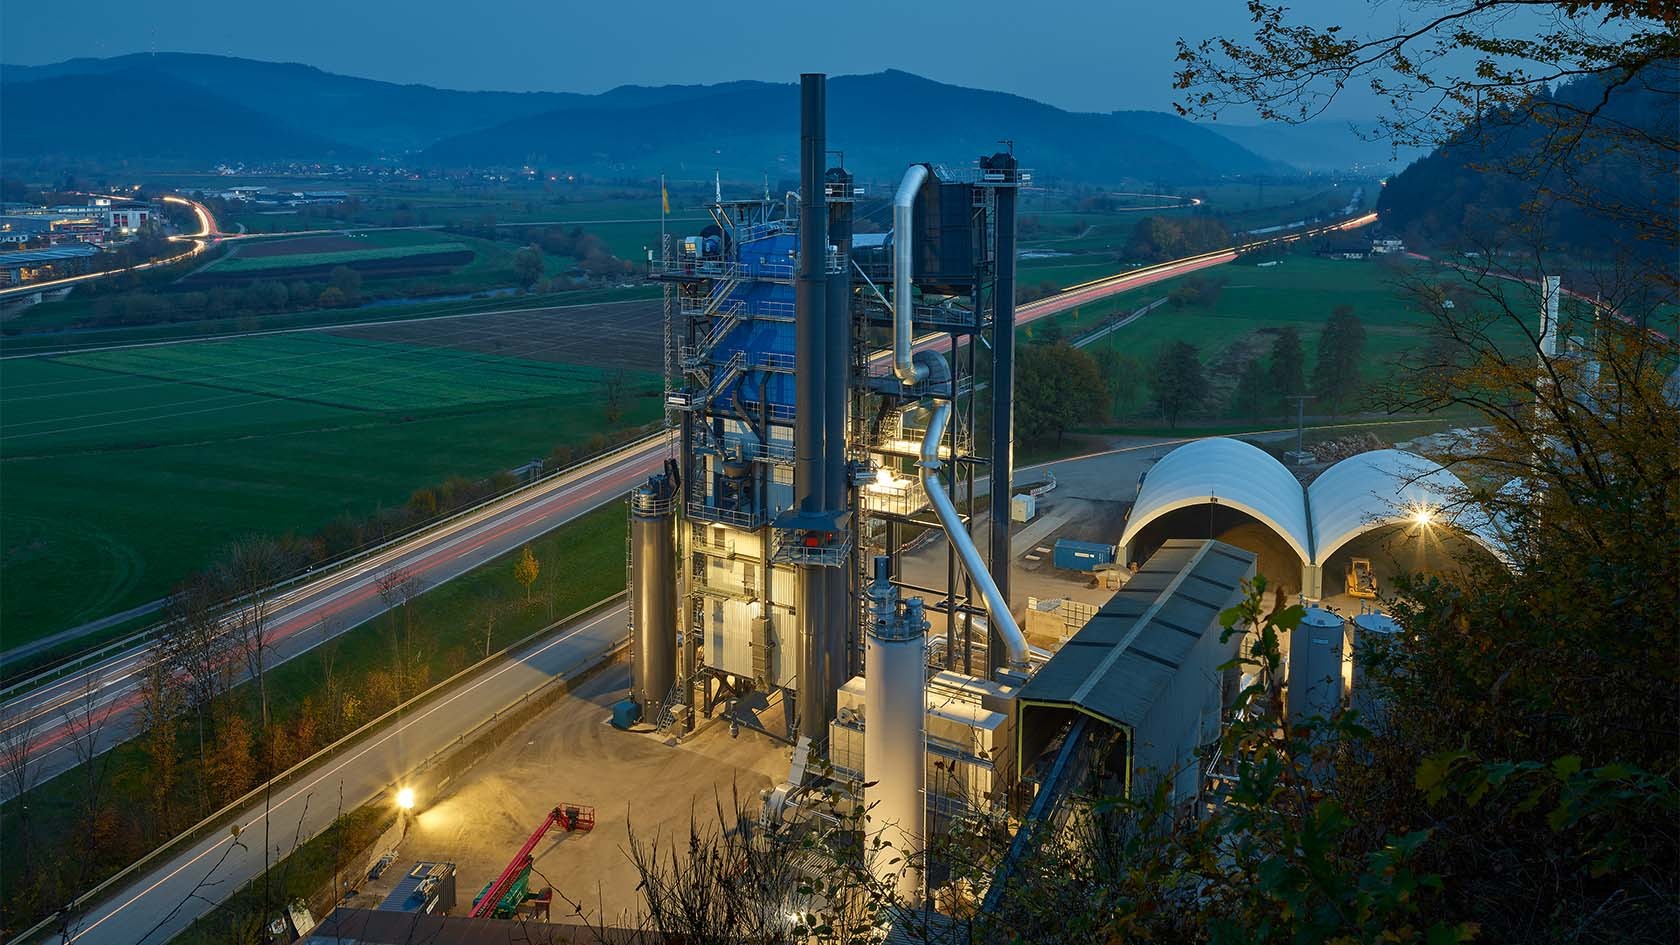 Используемый компанией Knäble GmbH асфальтобетонный завод RPP 4000 от компании Benninghoven соответствует требованиям к максимальной вторичной переработке при низком уровне выбросов.